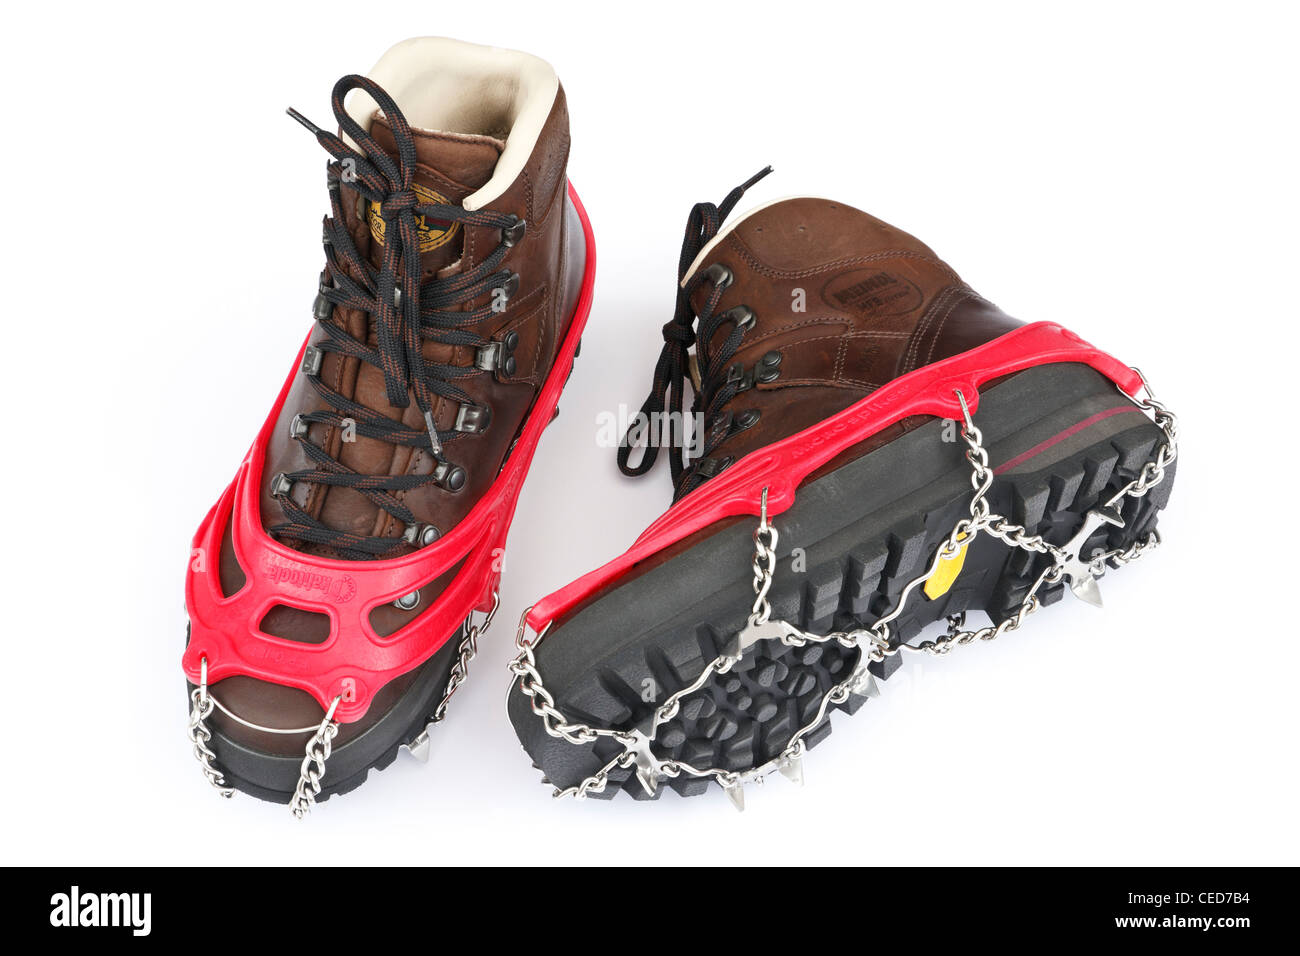 Une paire de bottes en cuir brun traditionnel avec Kahtoola microspikes pour l'utilisation sur la glace et la neige isolé sur un fond blanc. UK Banque D'Images